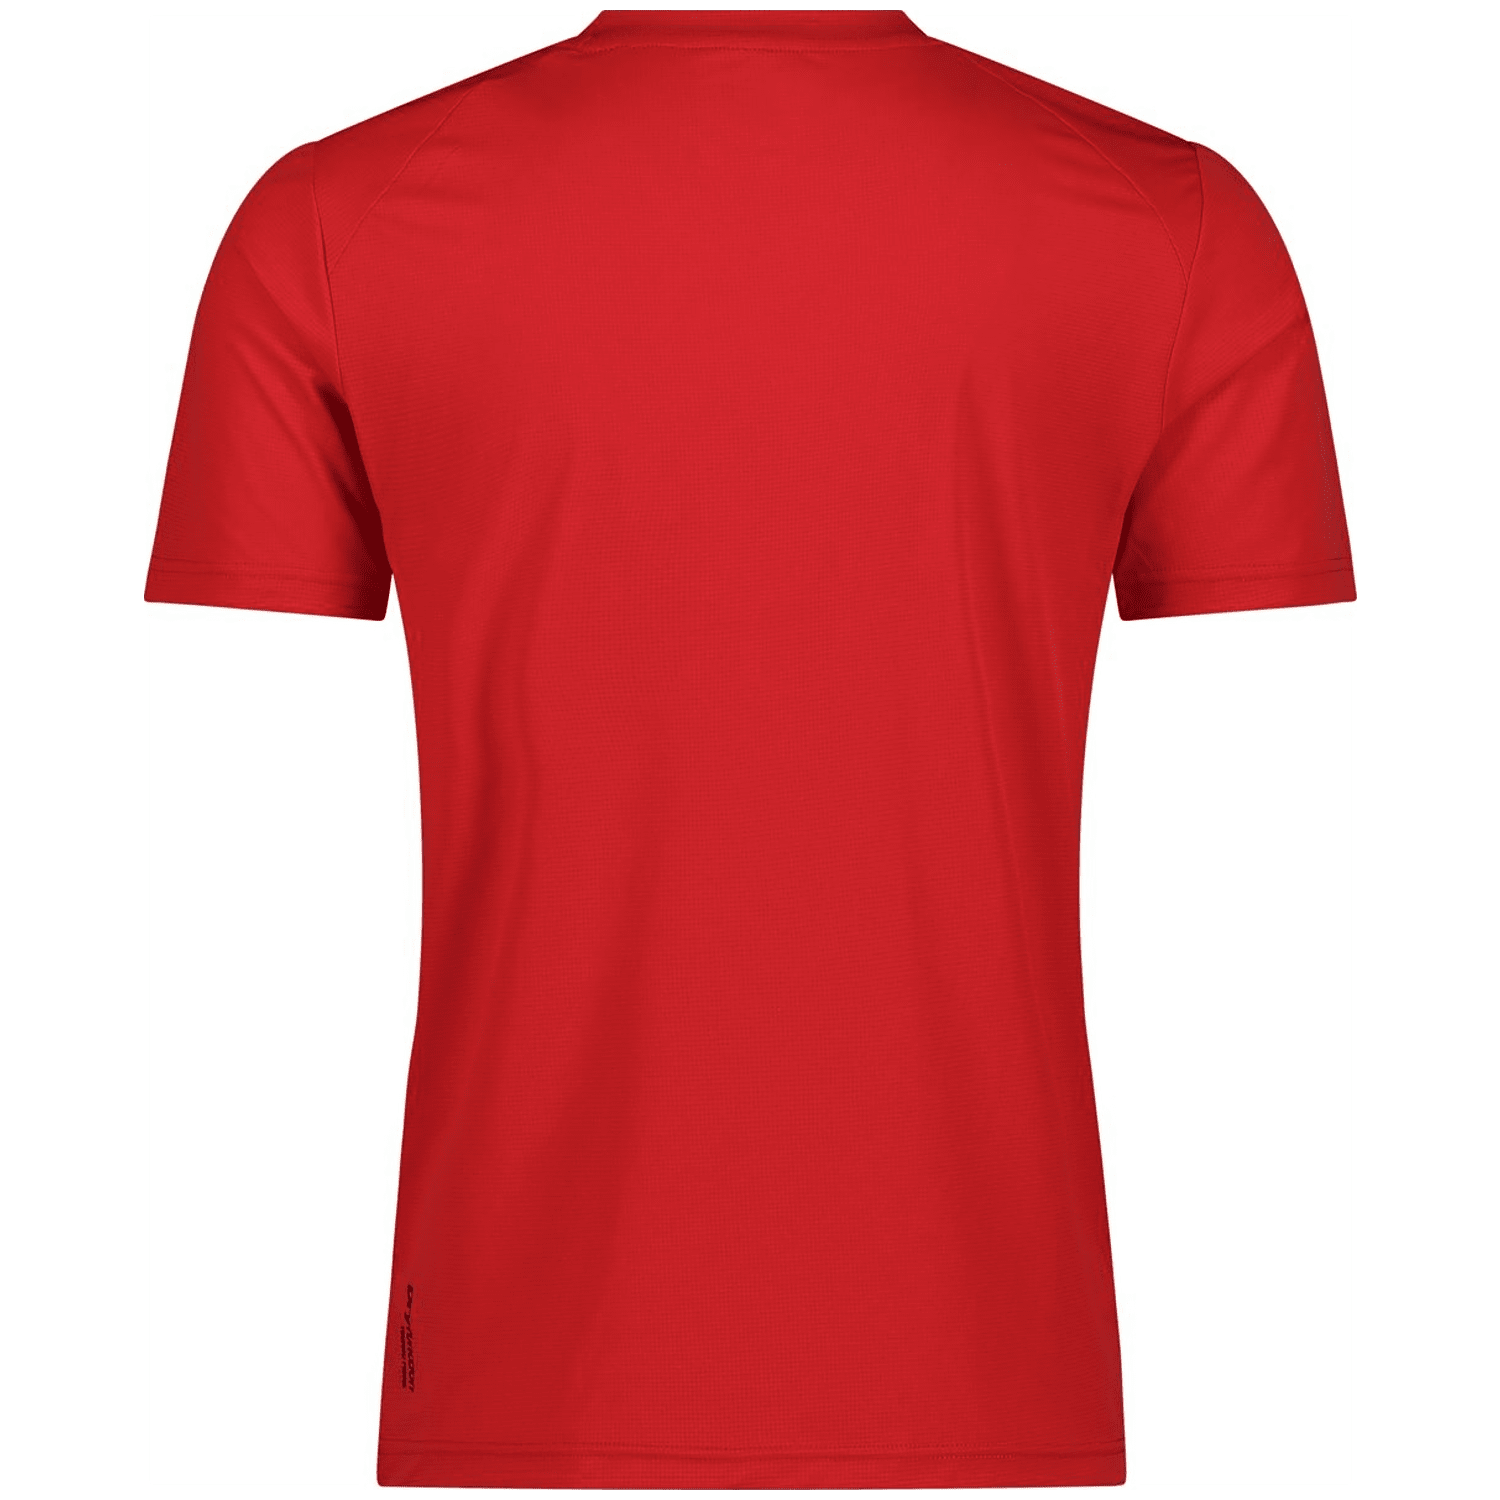 CMP T-shirt Herren T-Shirt